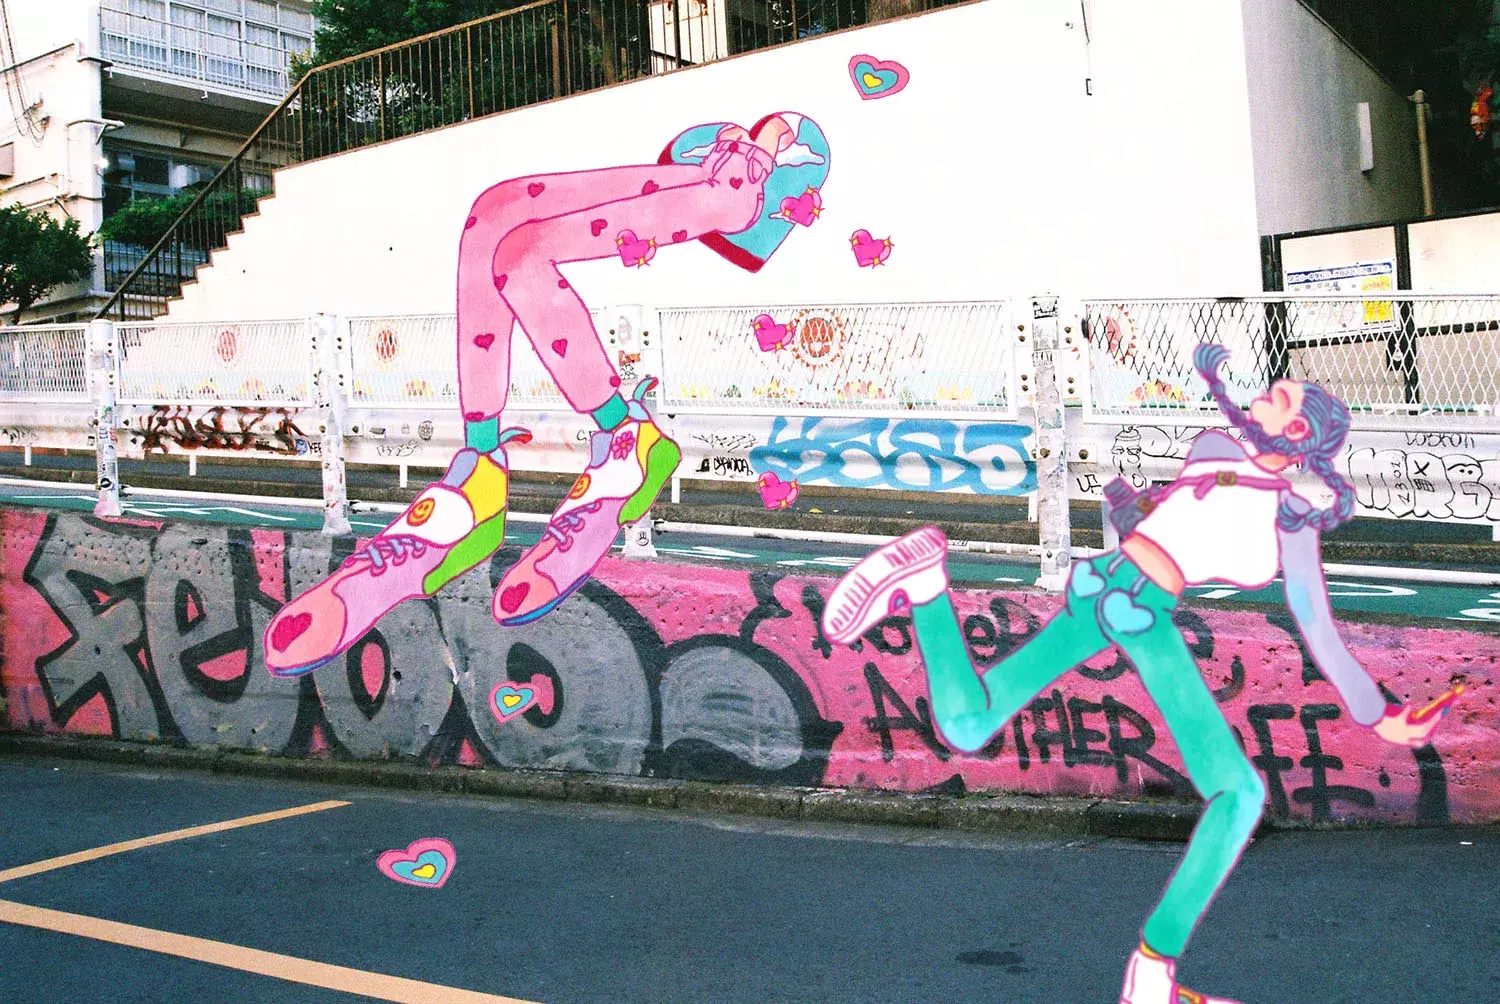 道玄坂 宇田川町の裏路地アートがノスタルジーな空間に誘う New Spot Shibuya 03 ローリエプレス